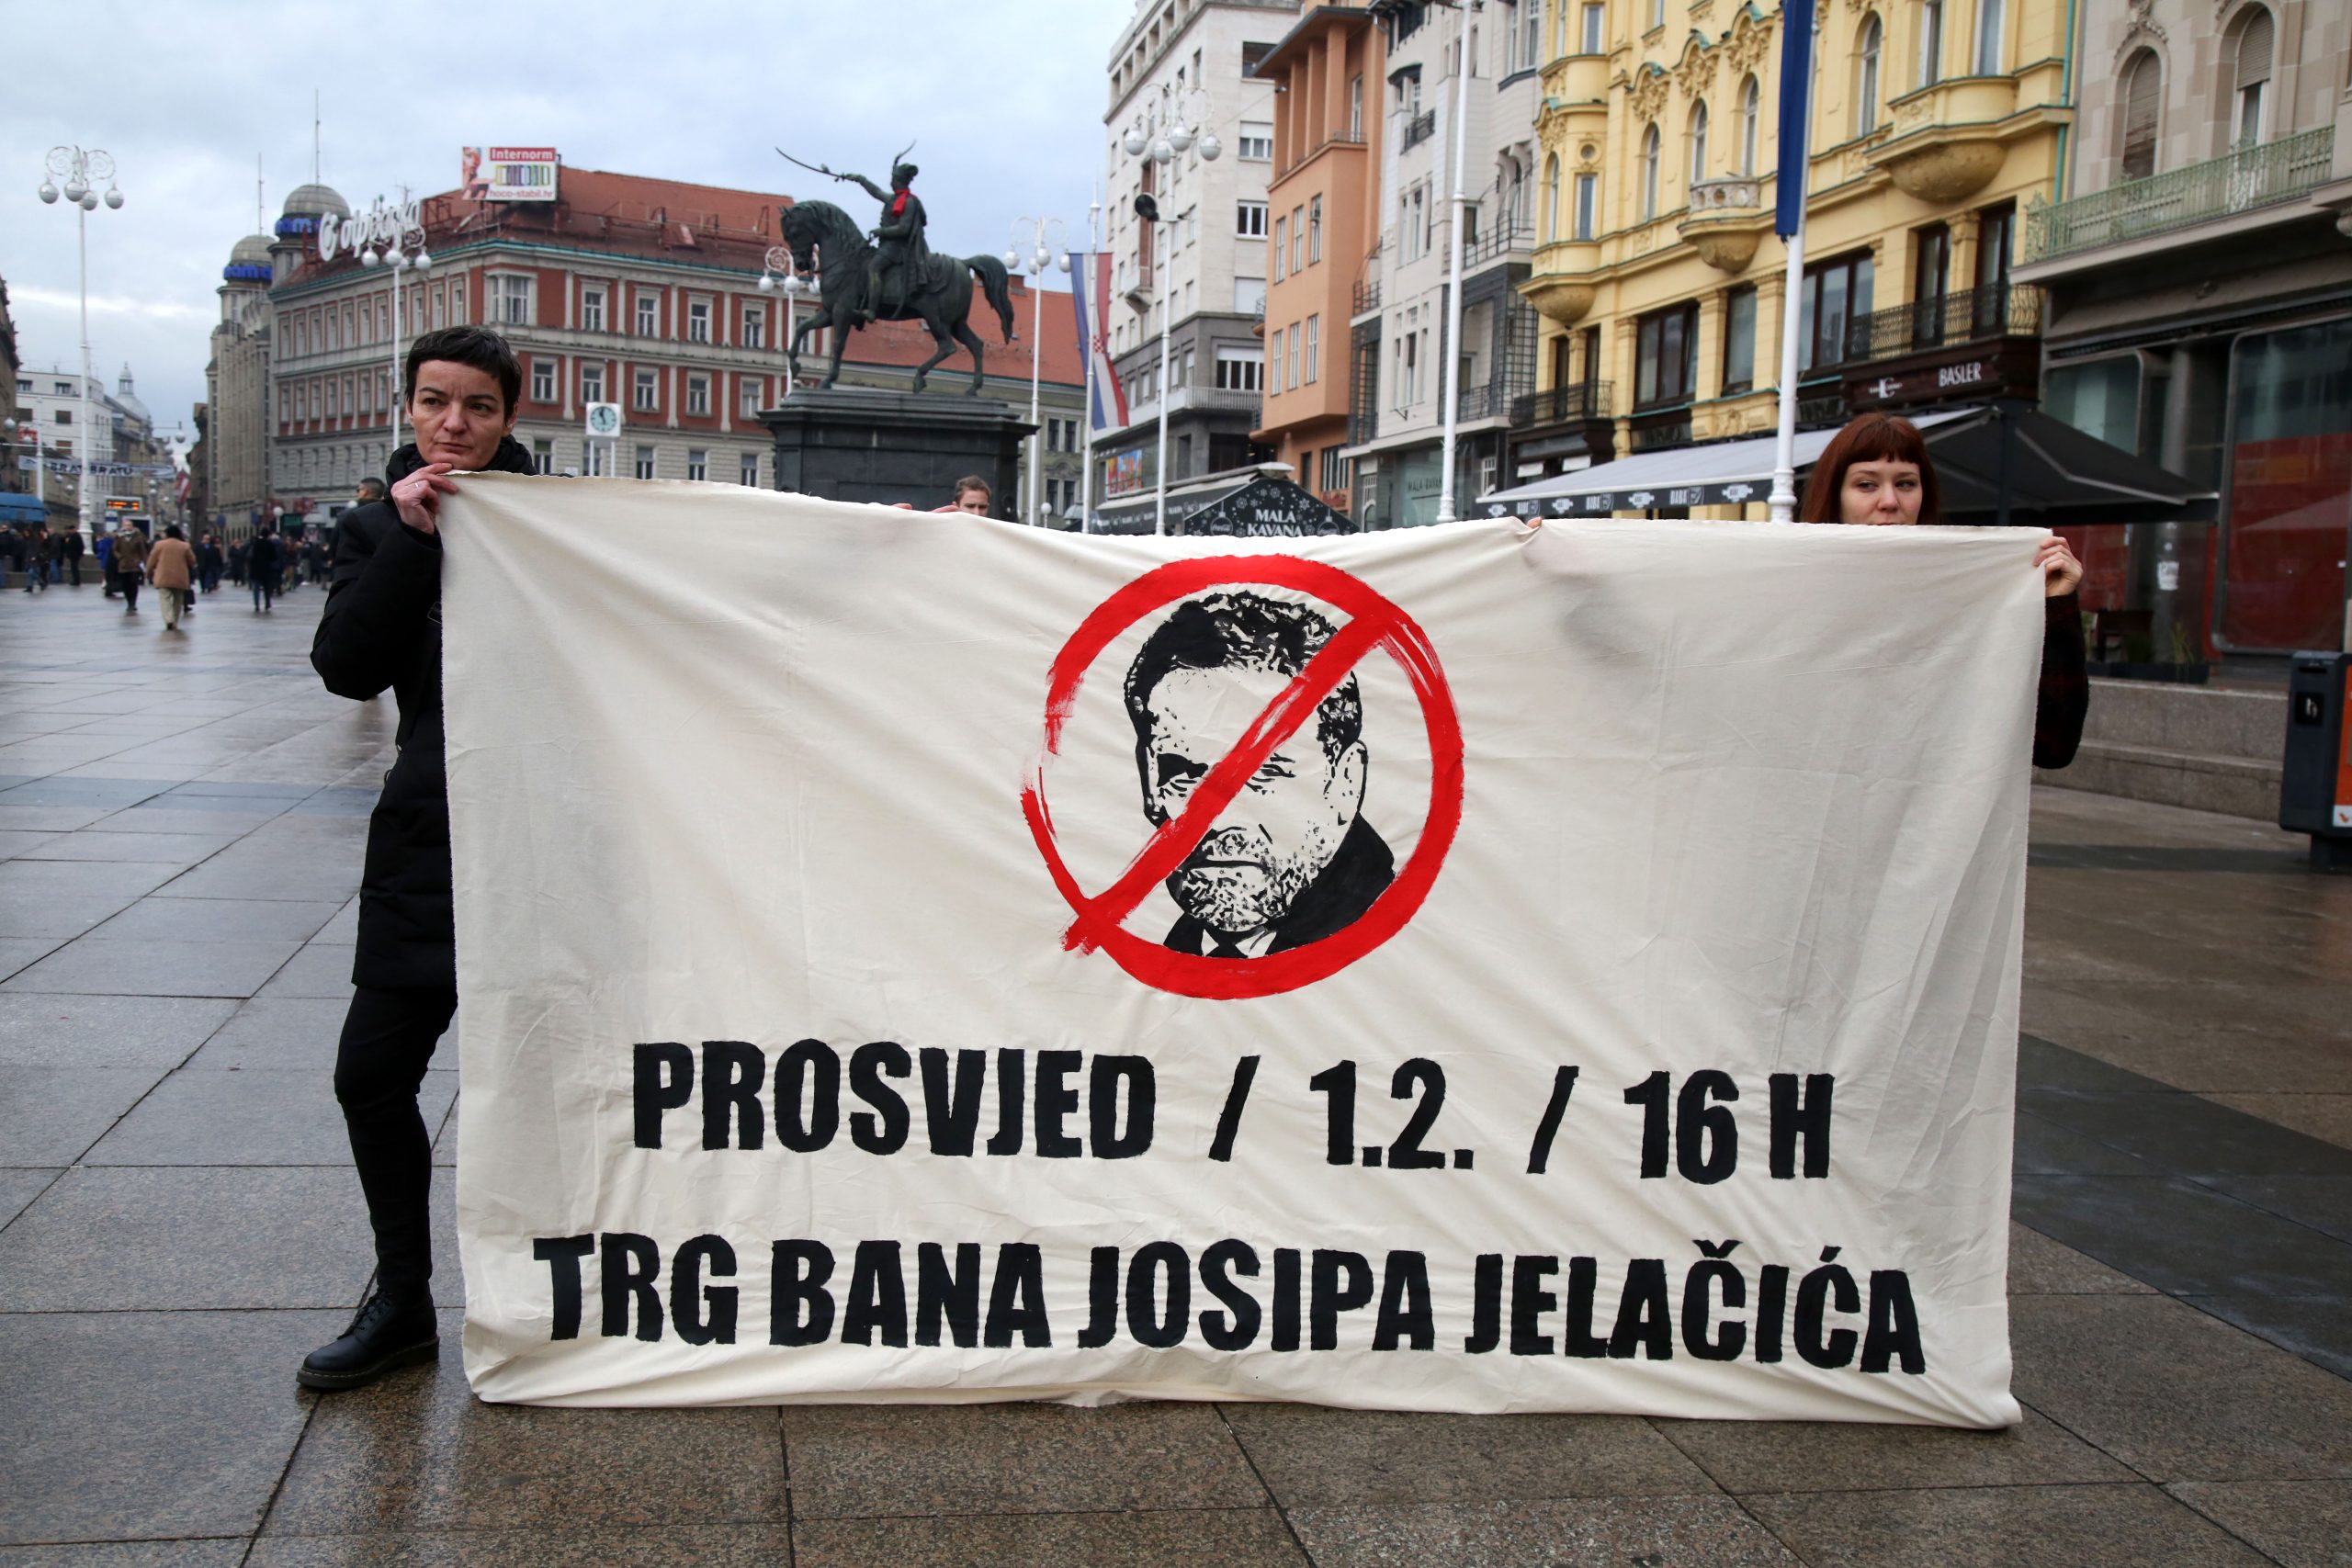 Zagreb, 28.1.2020 - Udruge Zelena akcija, Pravo na grad i Siget na konferenciji za medije najavili su prosvjed pod nazivom "Dosta je", protiv politike zagrebackog gradonacelnika Milana Bandica. Prosvjed ce se, kako najavljuju organizatori, odrati 1. veljace. 
Foto HINA/ Denis CERIC /dc